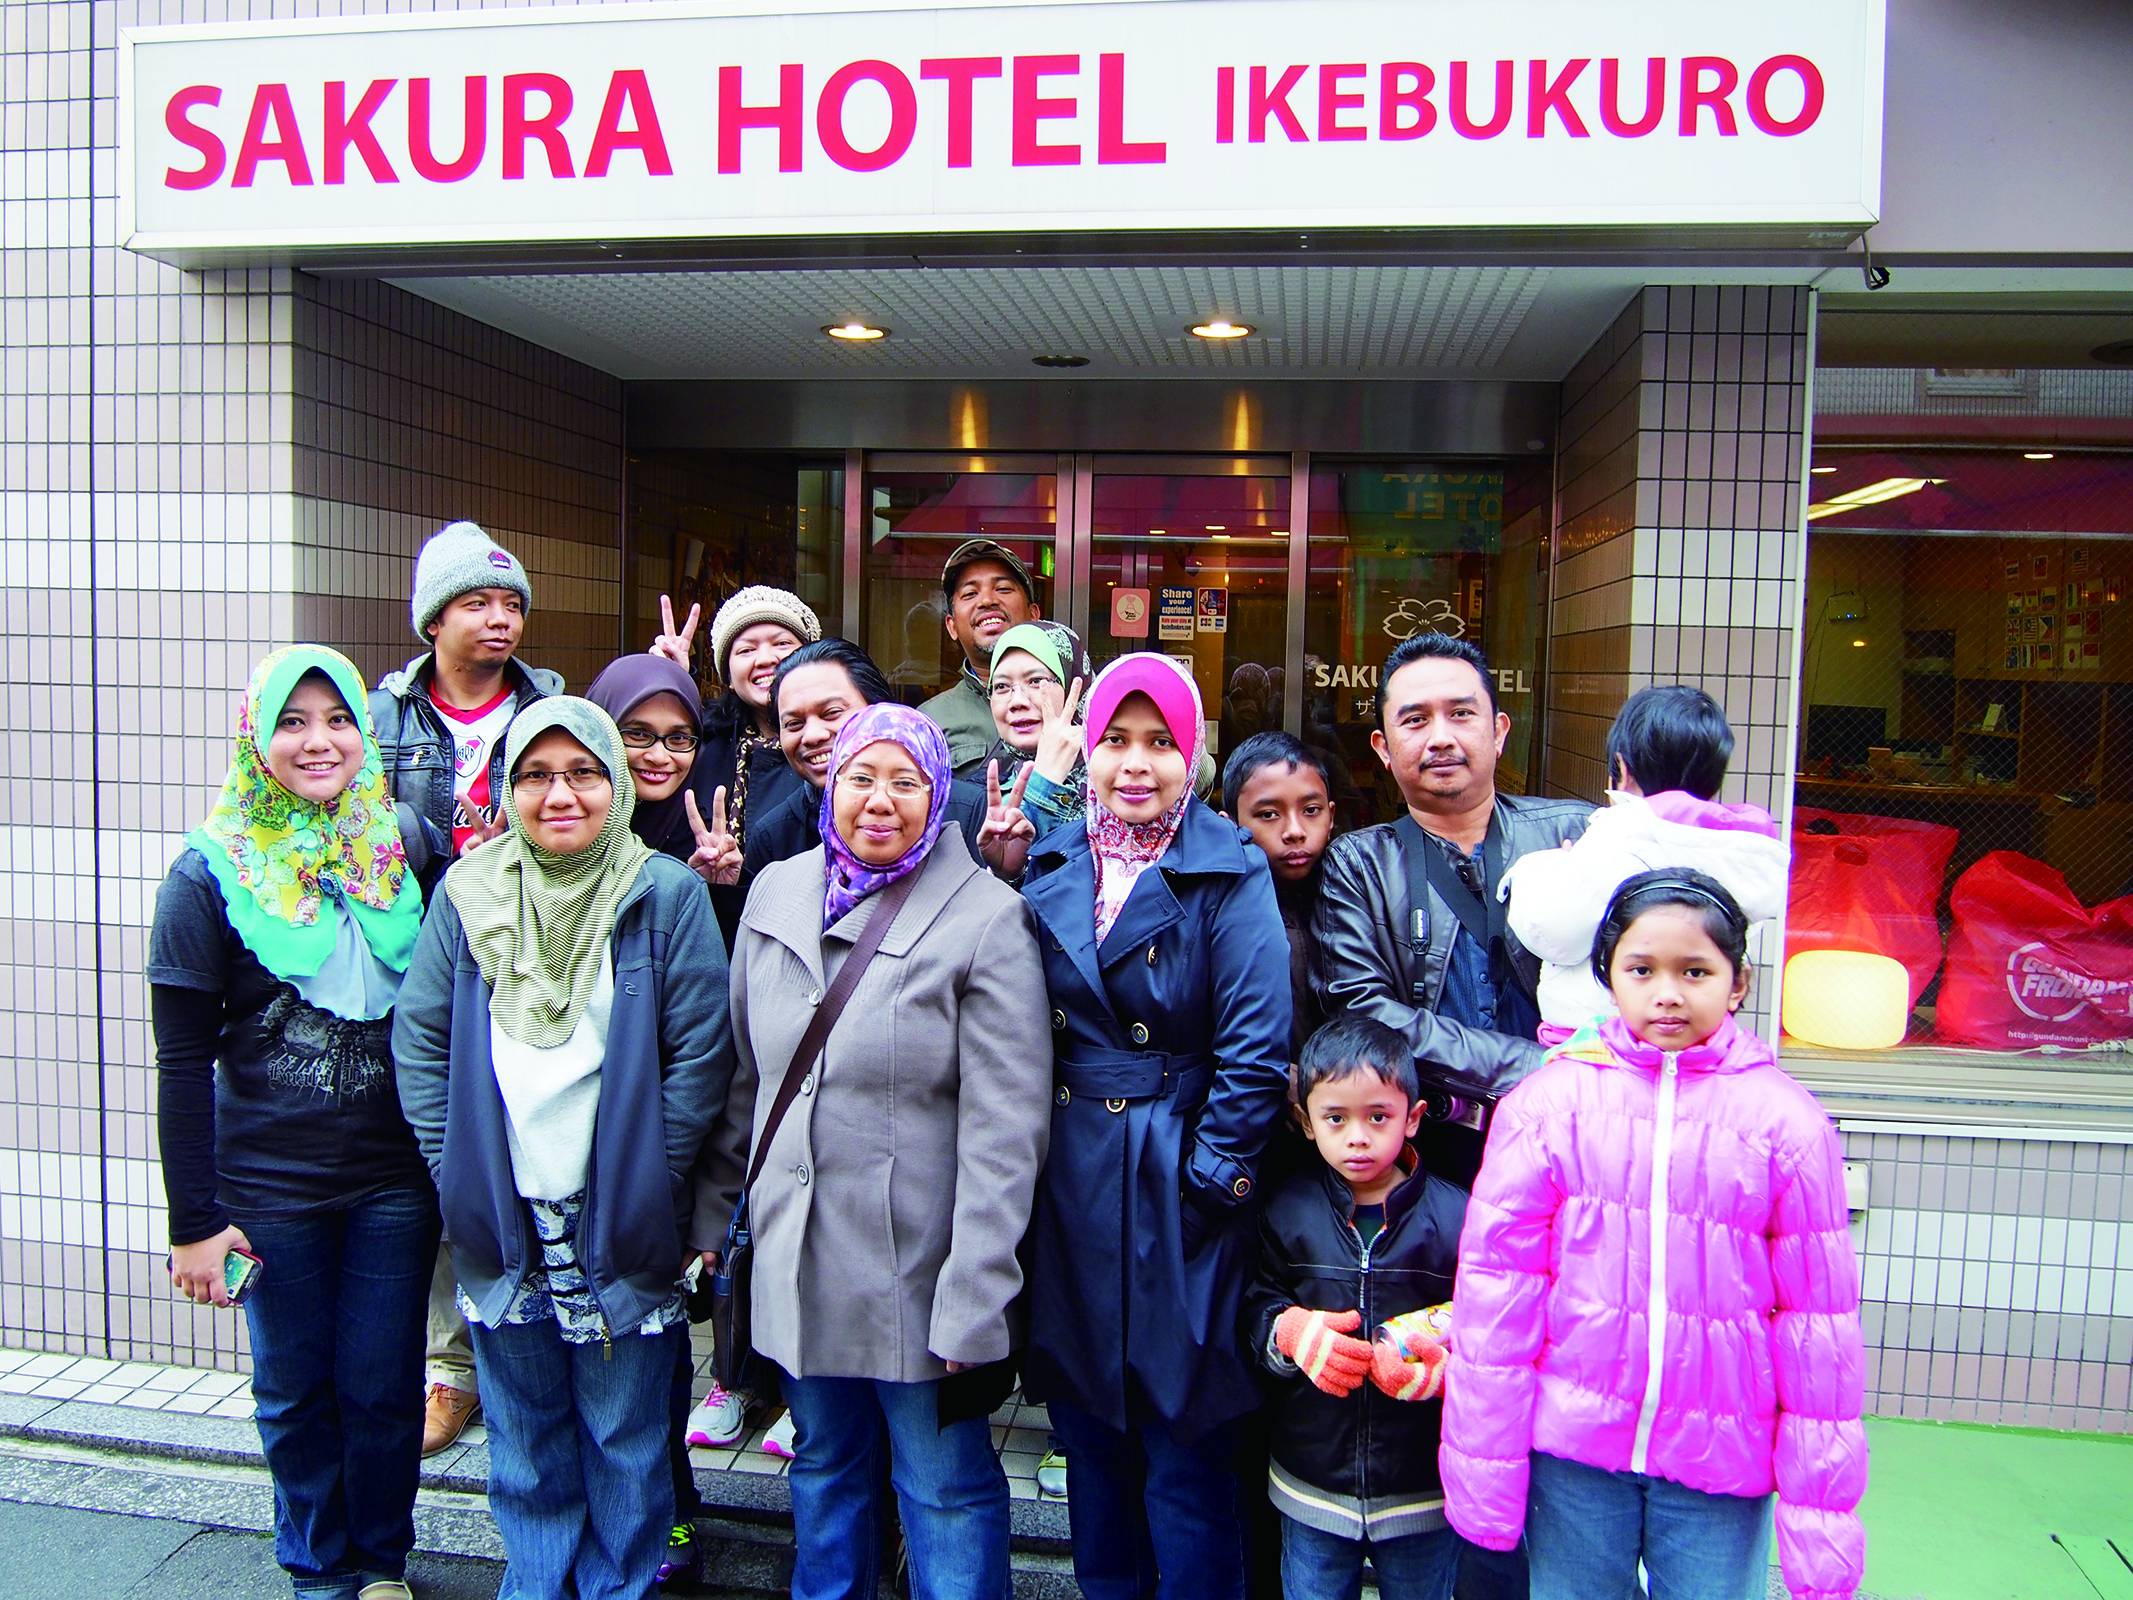 Guests pose for a photo at the entrance of Sakura Hotel Ikebukuro in Tokyo’s Toshima Ward. | SAKURA HOTEL AND SAKURA HOUSE